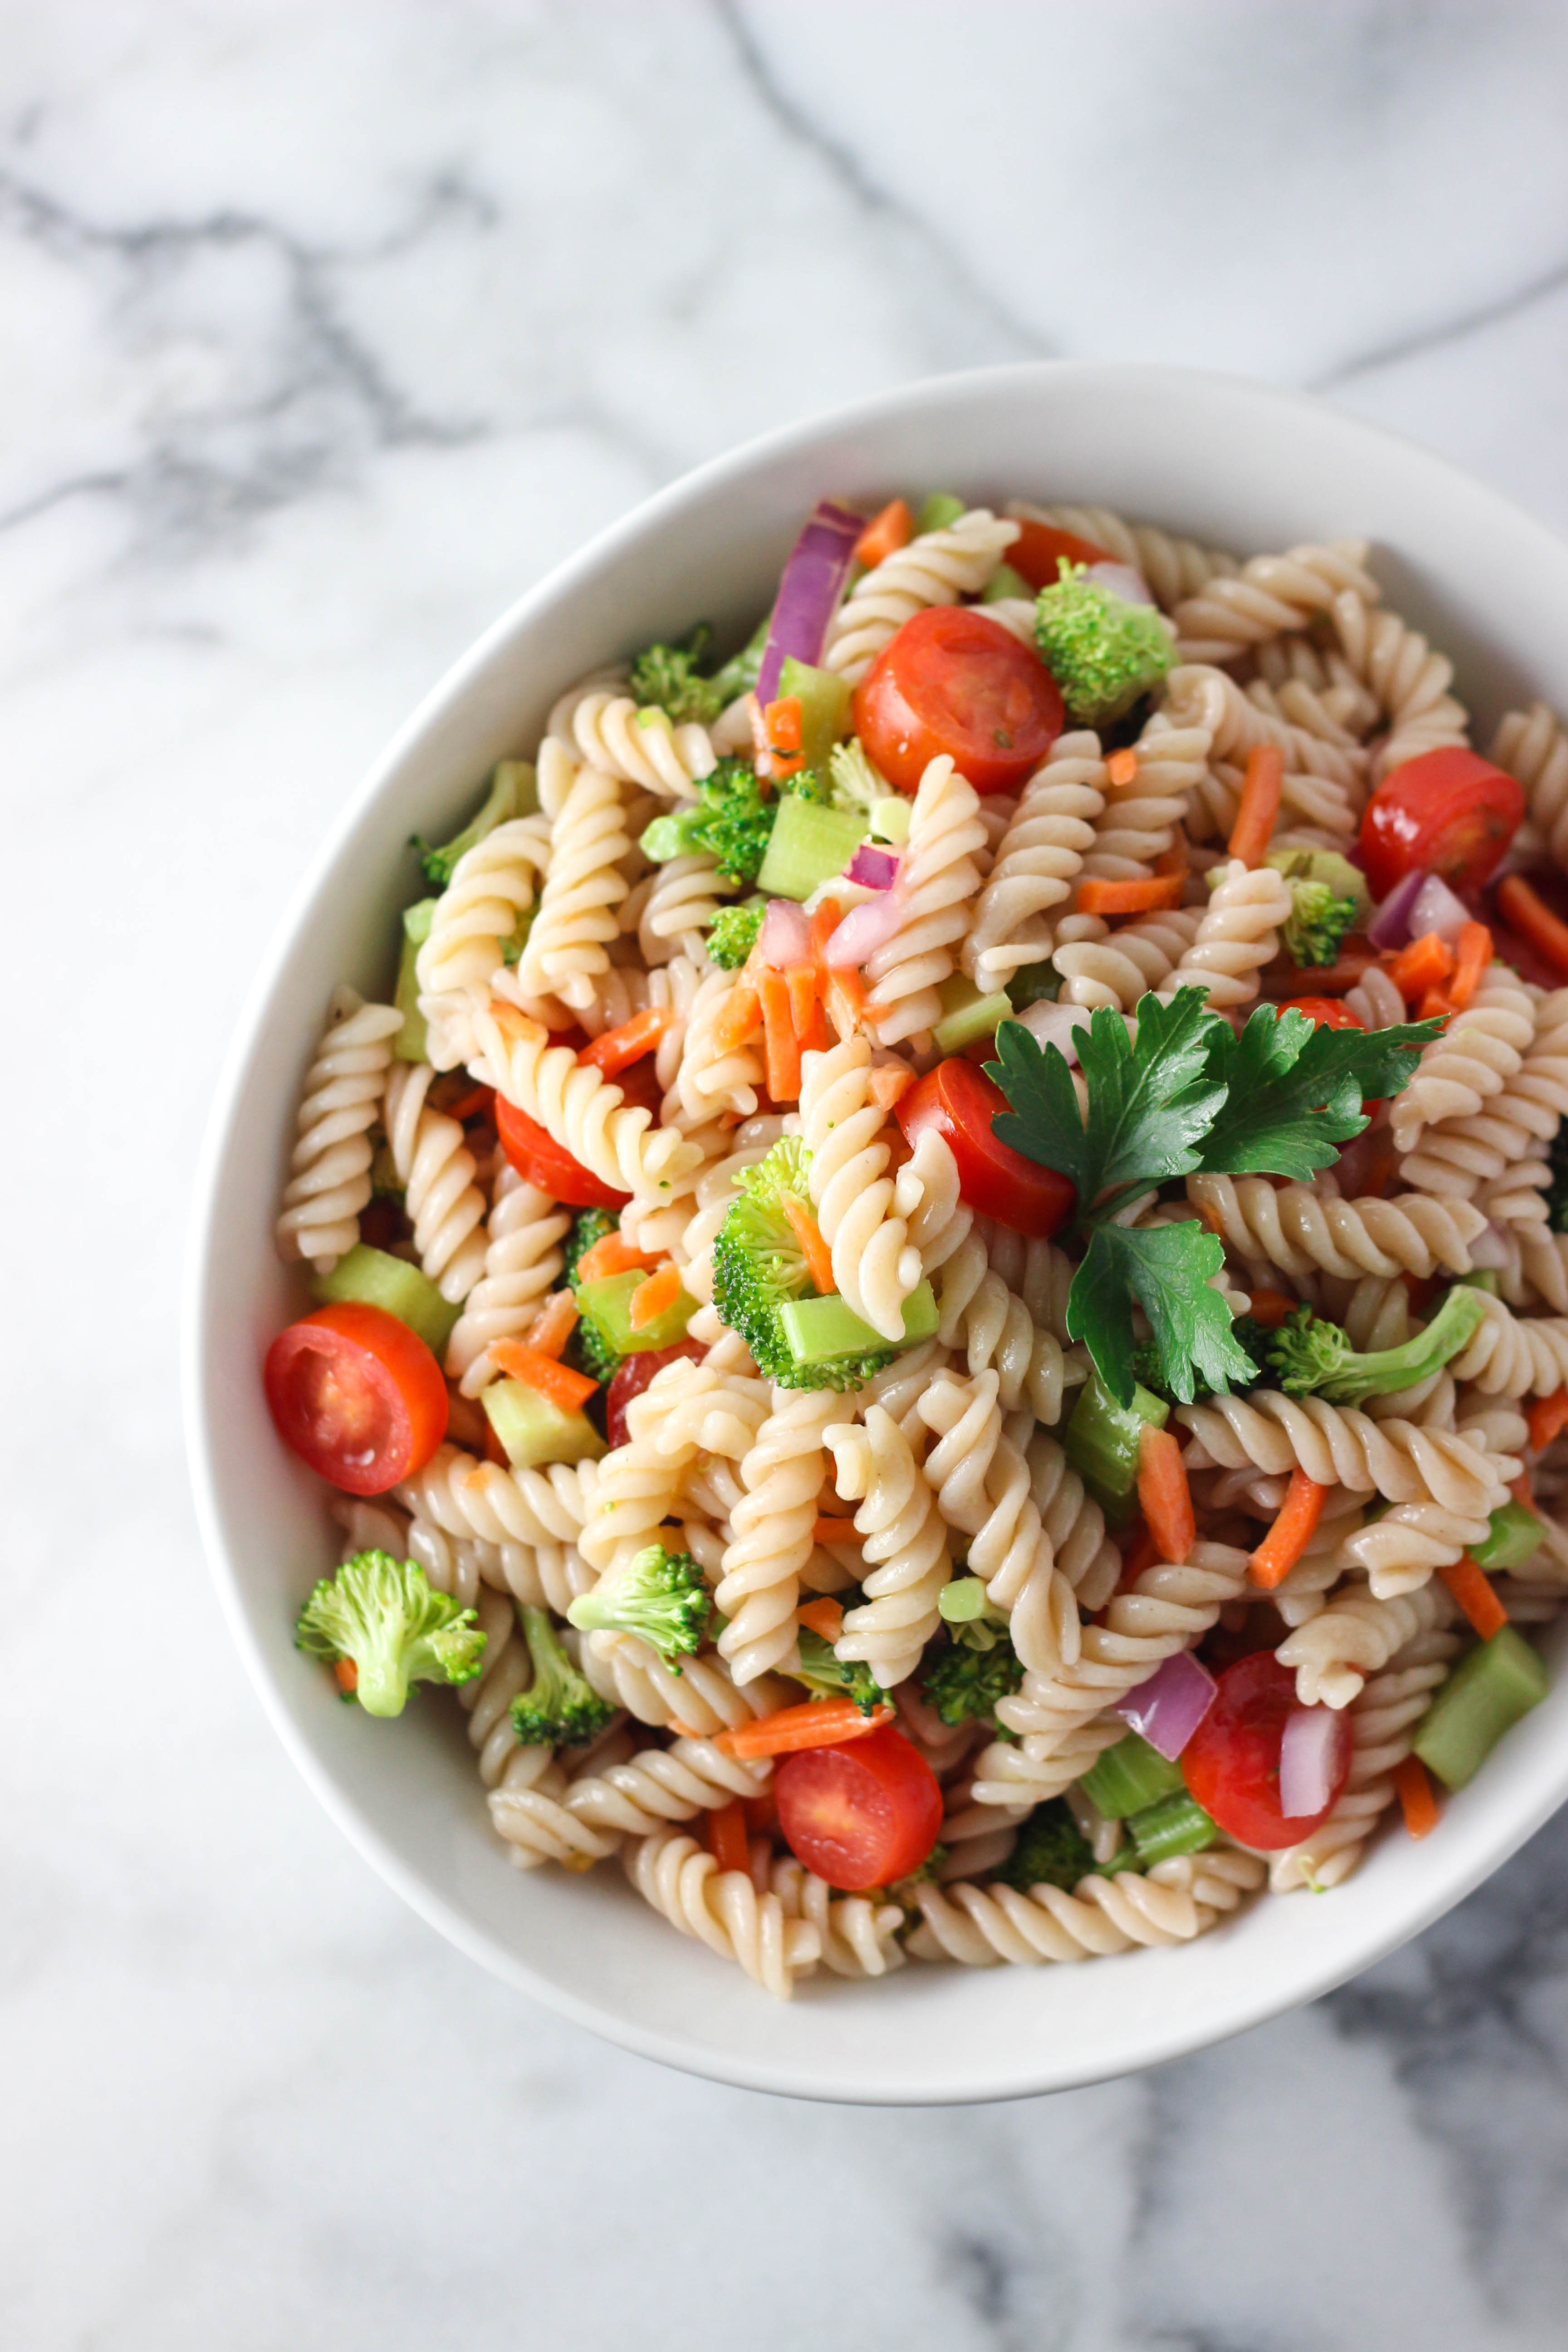 Is Pasta Salad Healthy
 Italian Pasta Salad & Reader Survey Exploring Healthy Foods